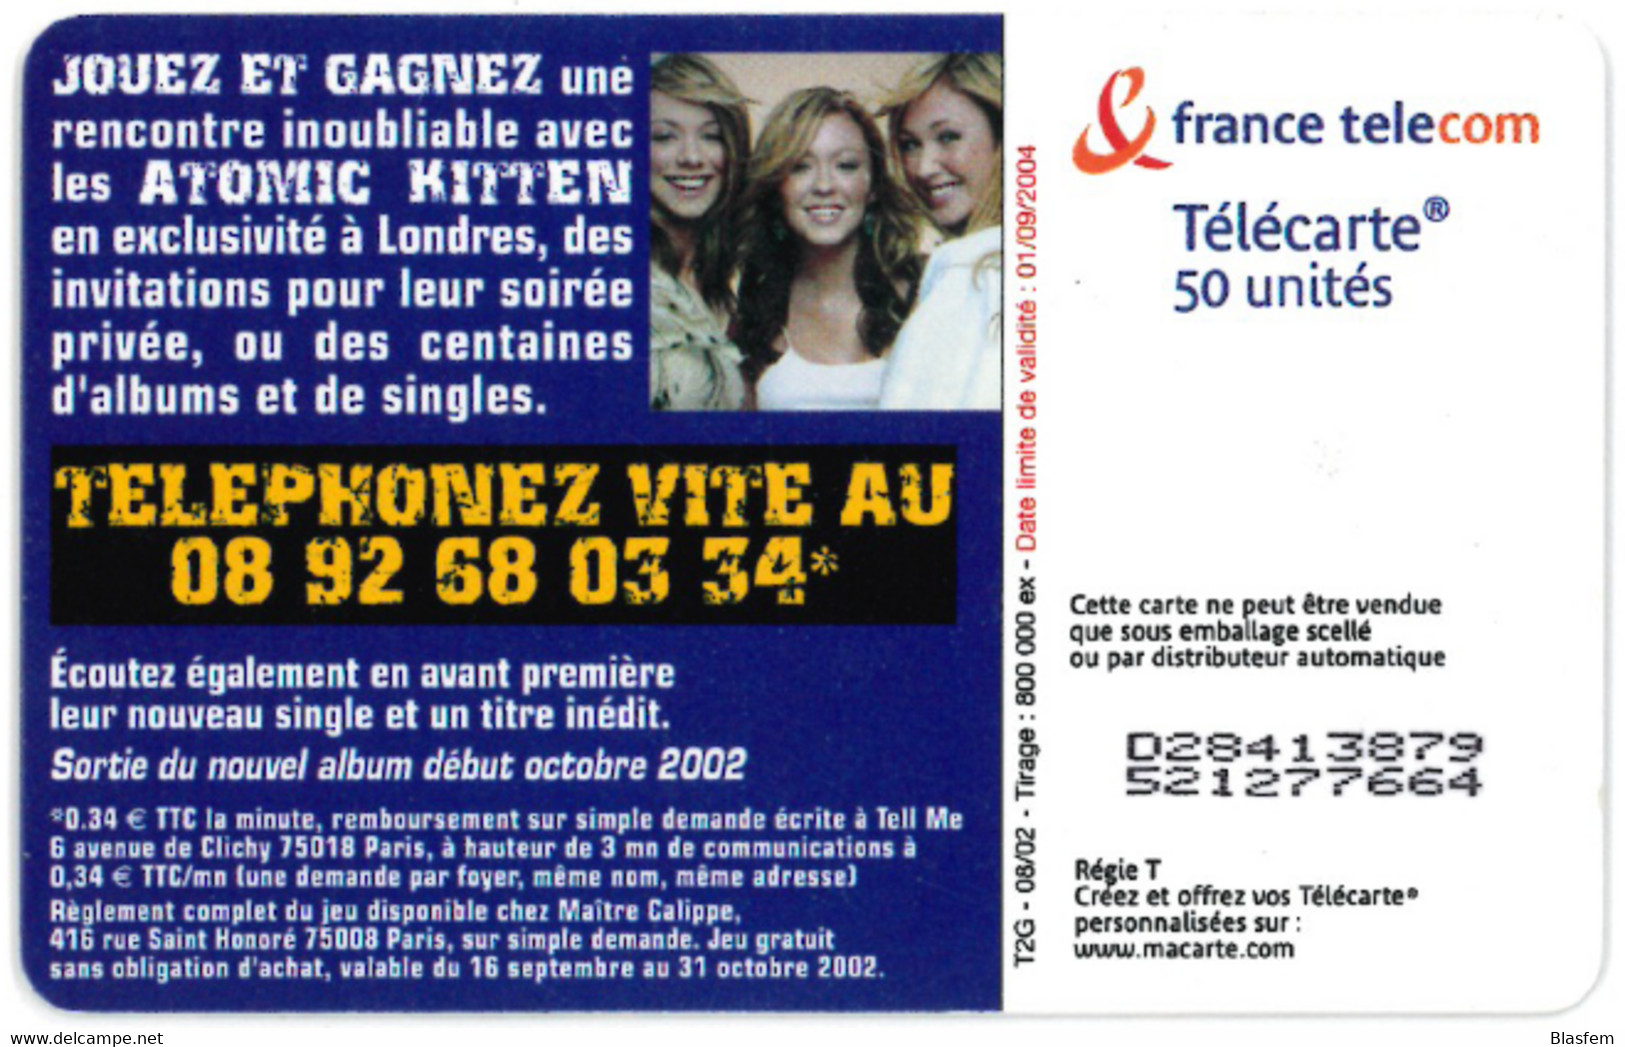 Telecarte 50 - Atomic Kitten 800 000 Ex - 06/02 - OB2 T2G Etat Courant - 2002